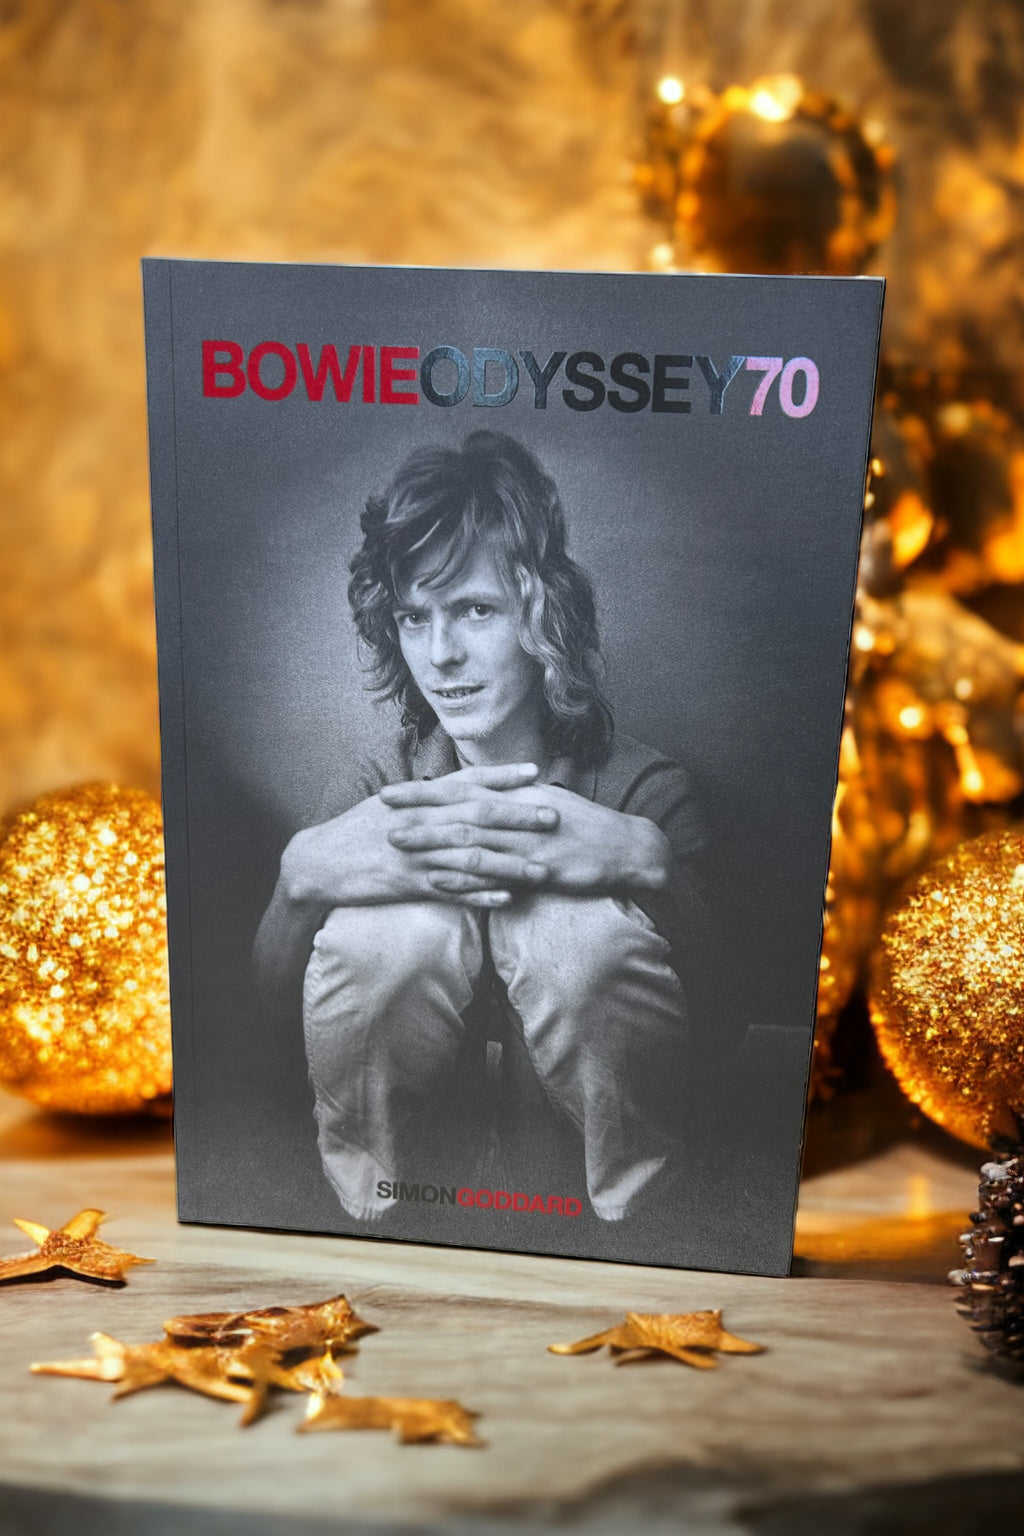 David Bowie - Bowie Odysse 70 Book by Simon Goddard